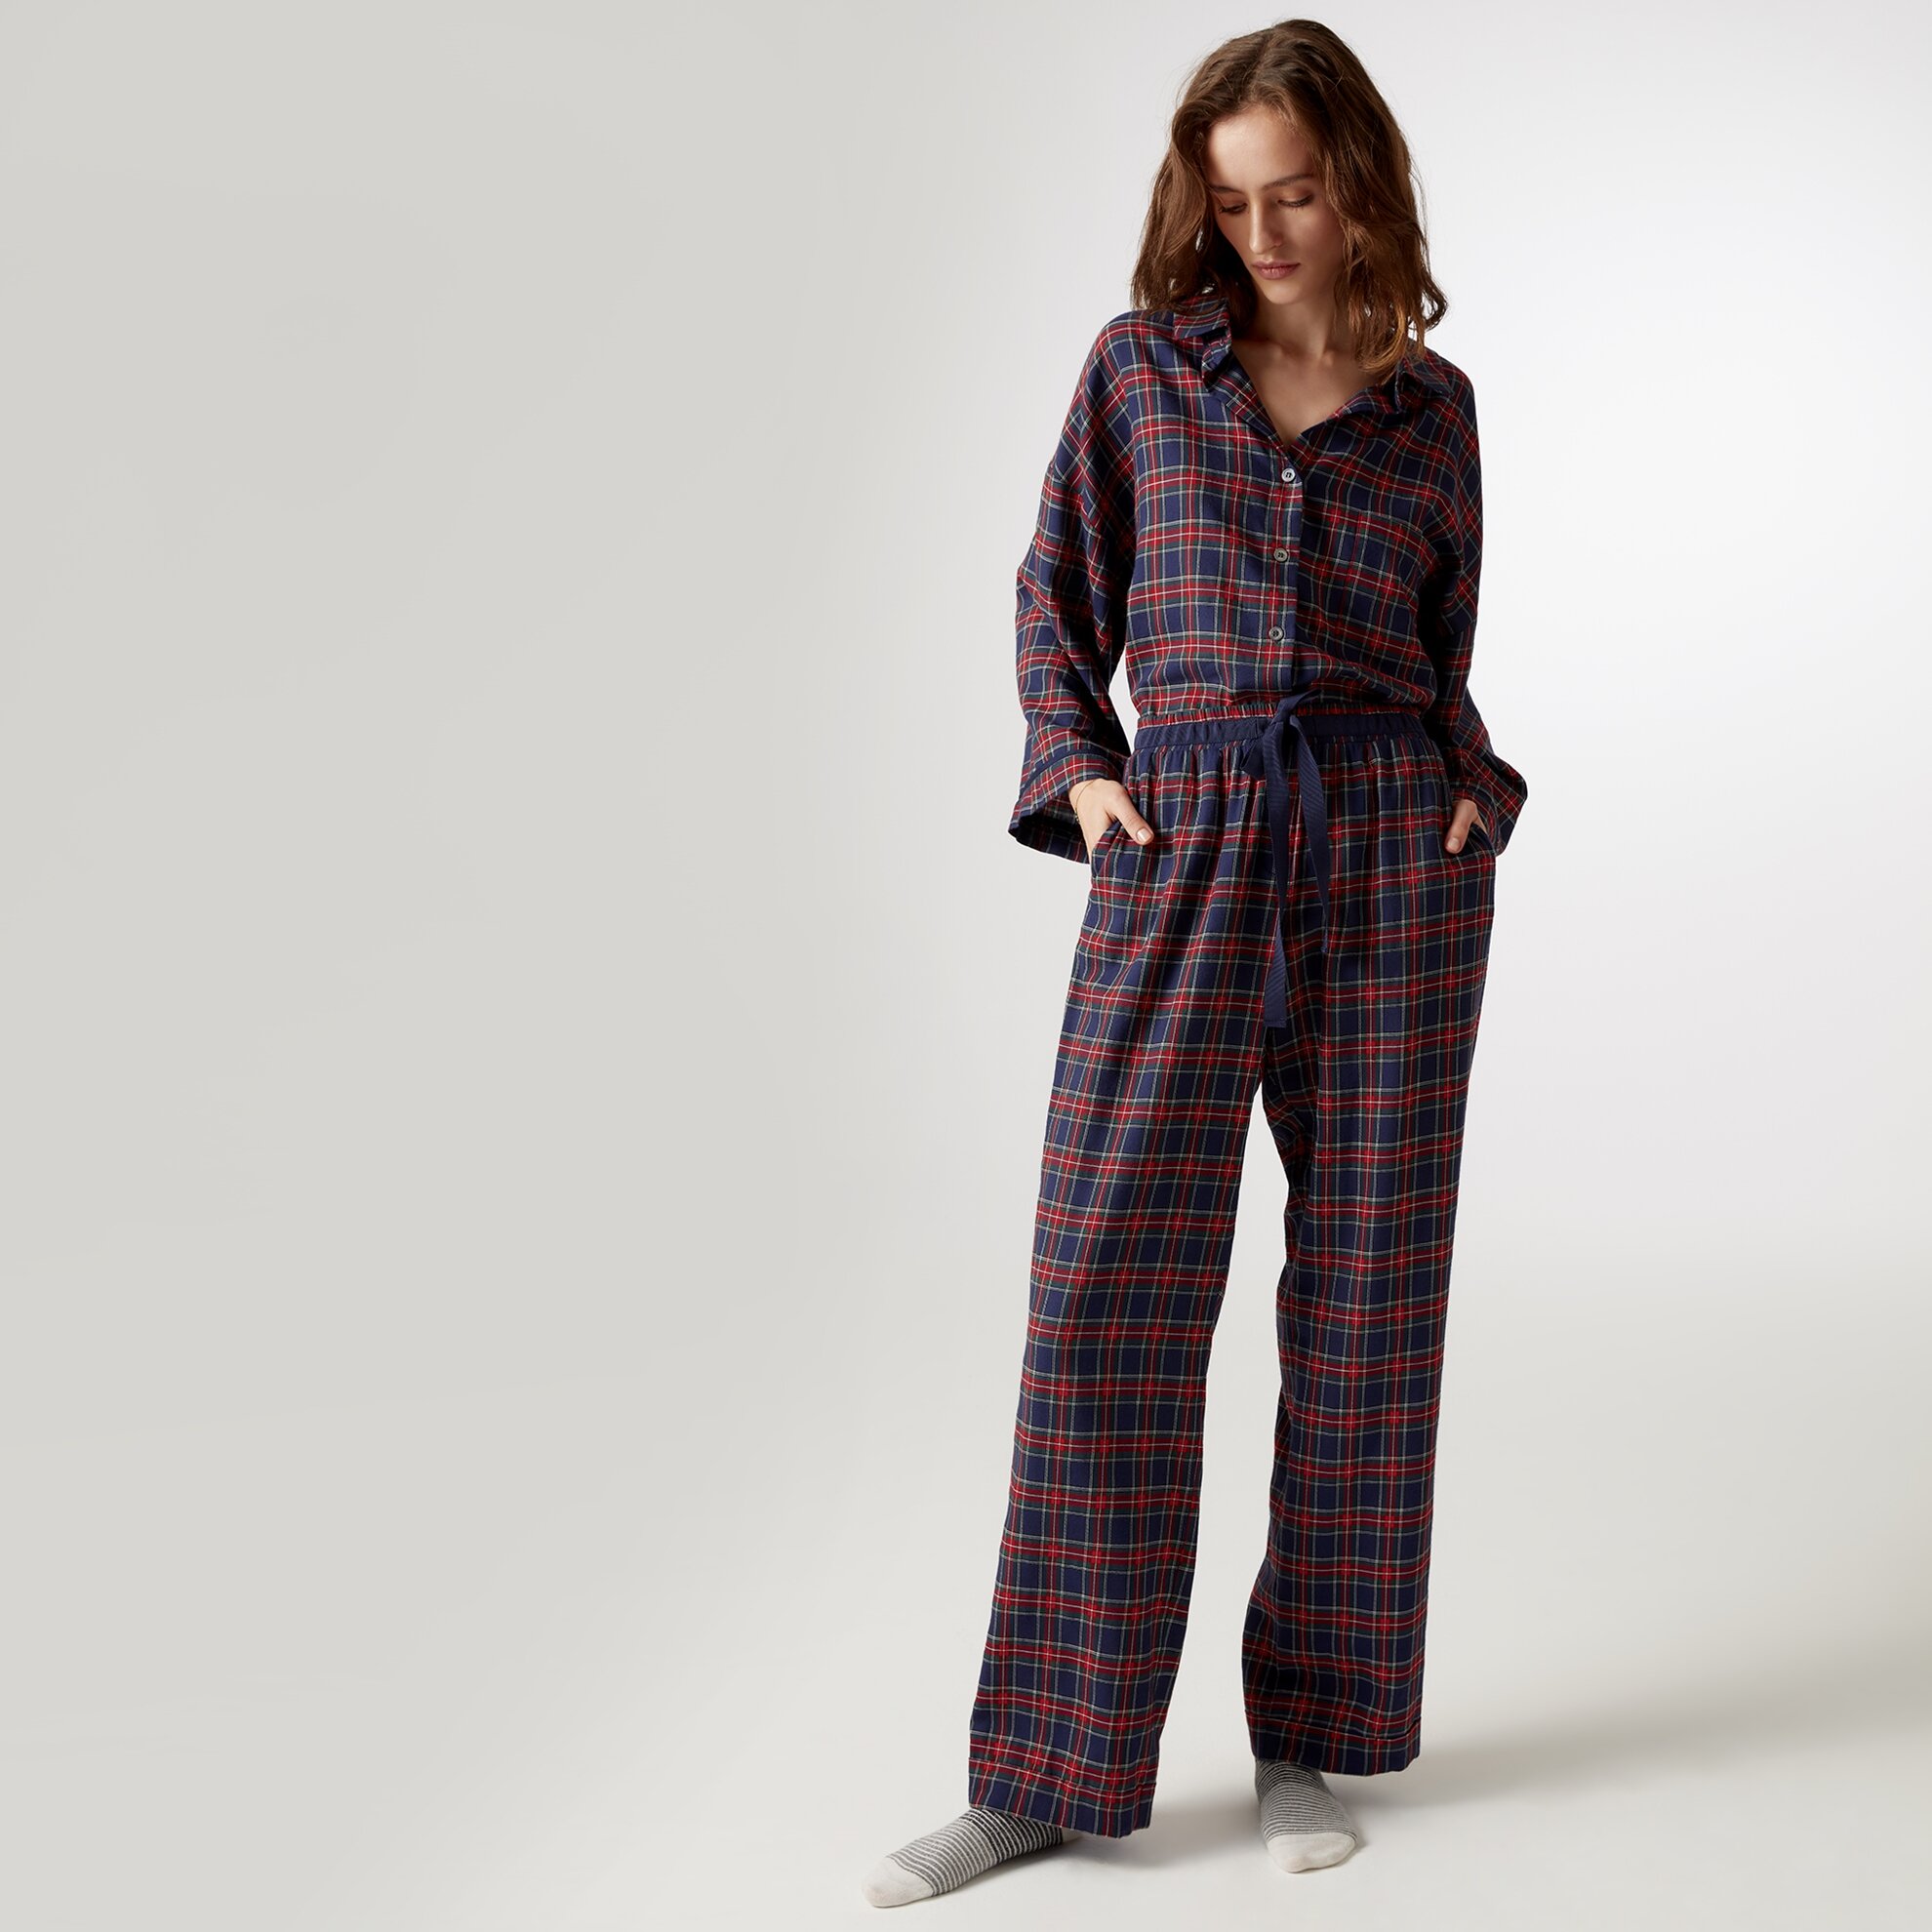 Grogren Detaylı Pijama Altı